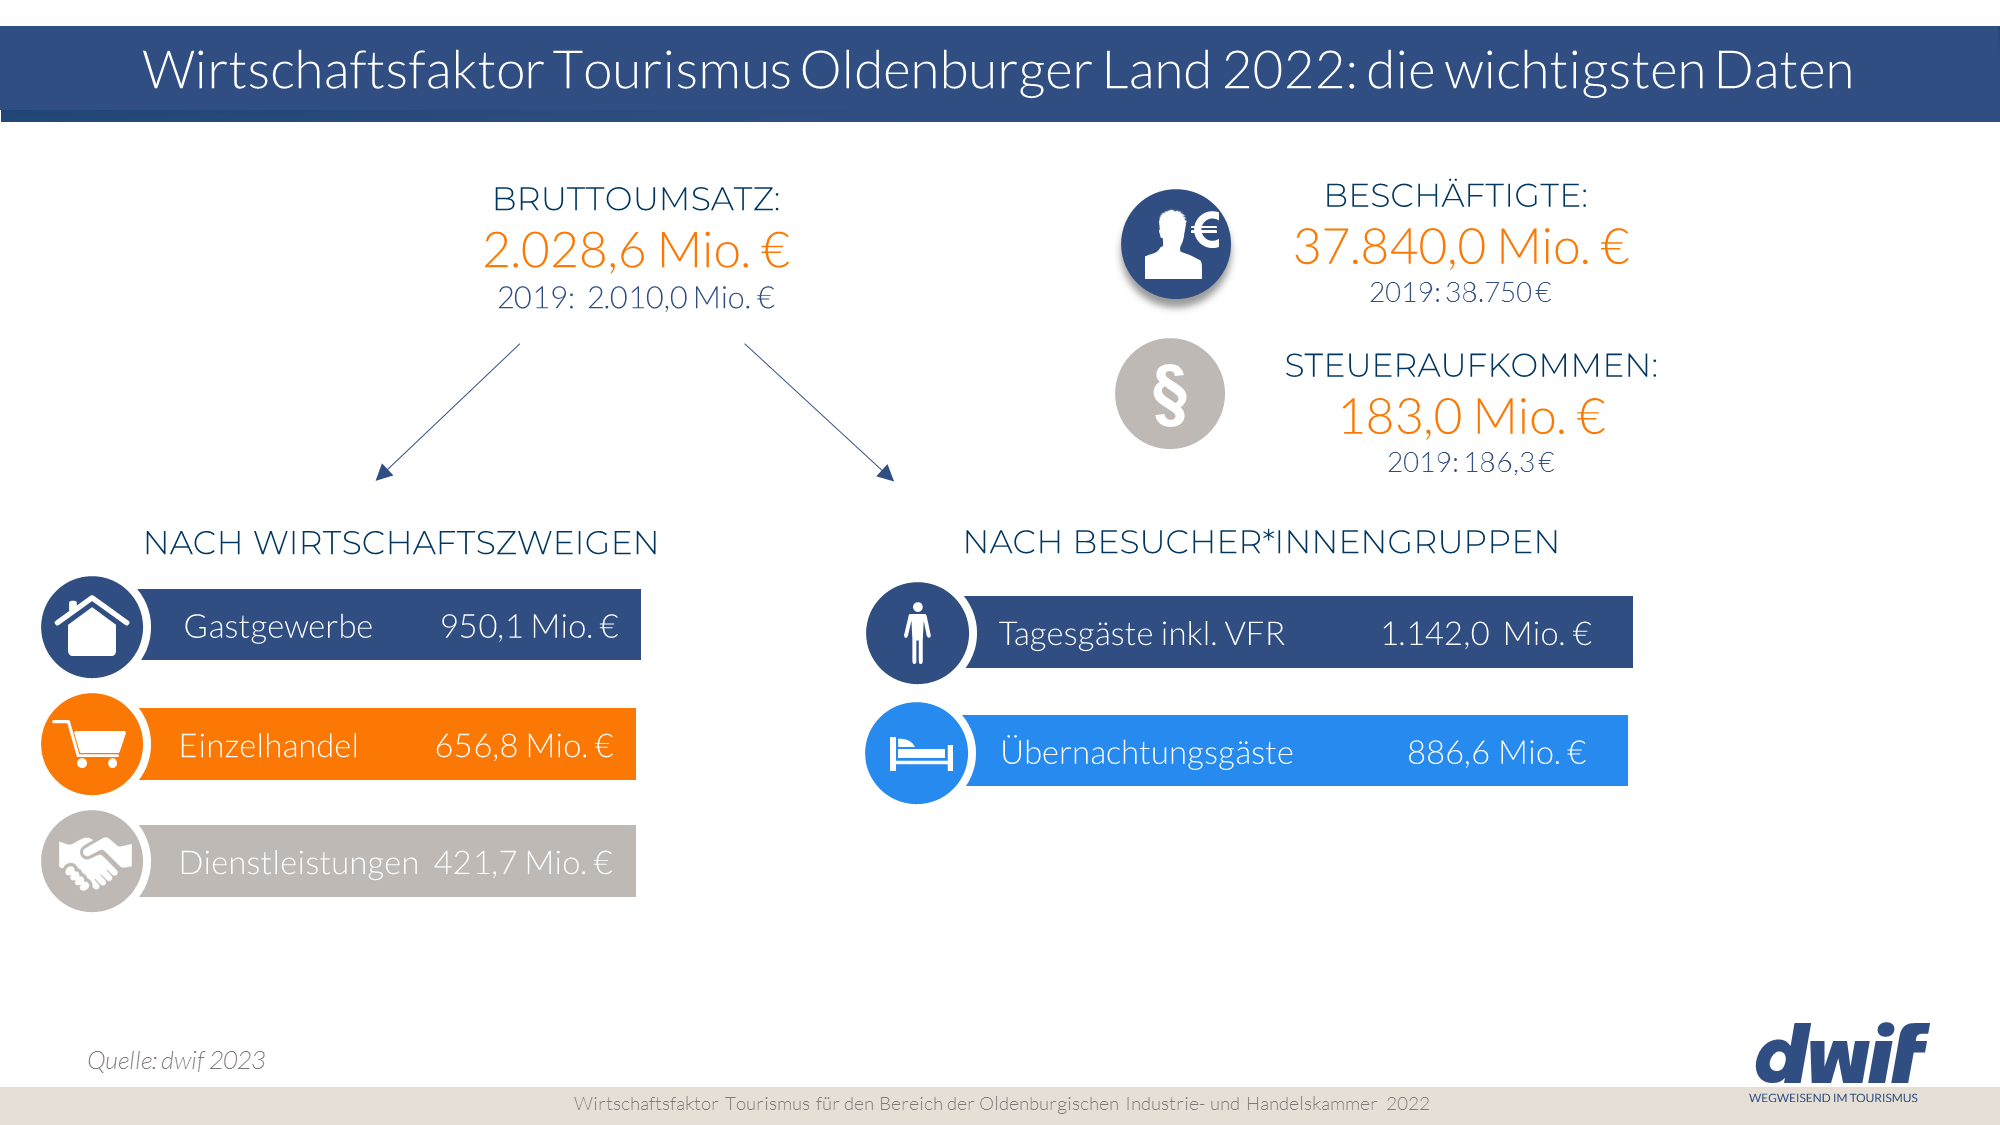 Daten und Fakten zum dwif-Wirtschaftsfaktor Oldenburg 2022 im Vergleich zu 2019